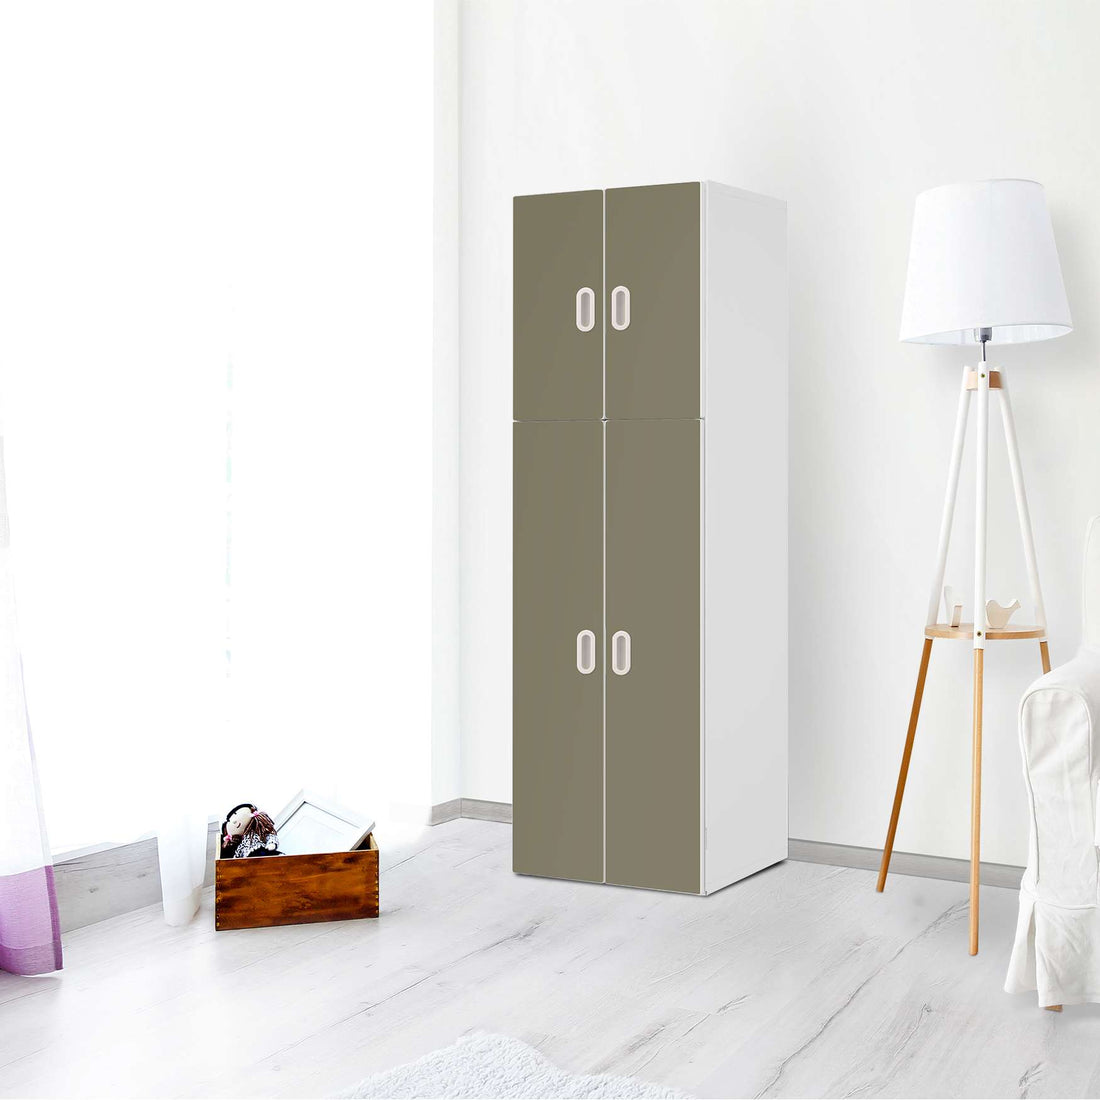 Selbstklebende Folie Braungrau Light - IKEA Stuva / Fritids kombiniert - 2 große Türen und 2 kleine Türen - Kinderzimmer